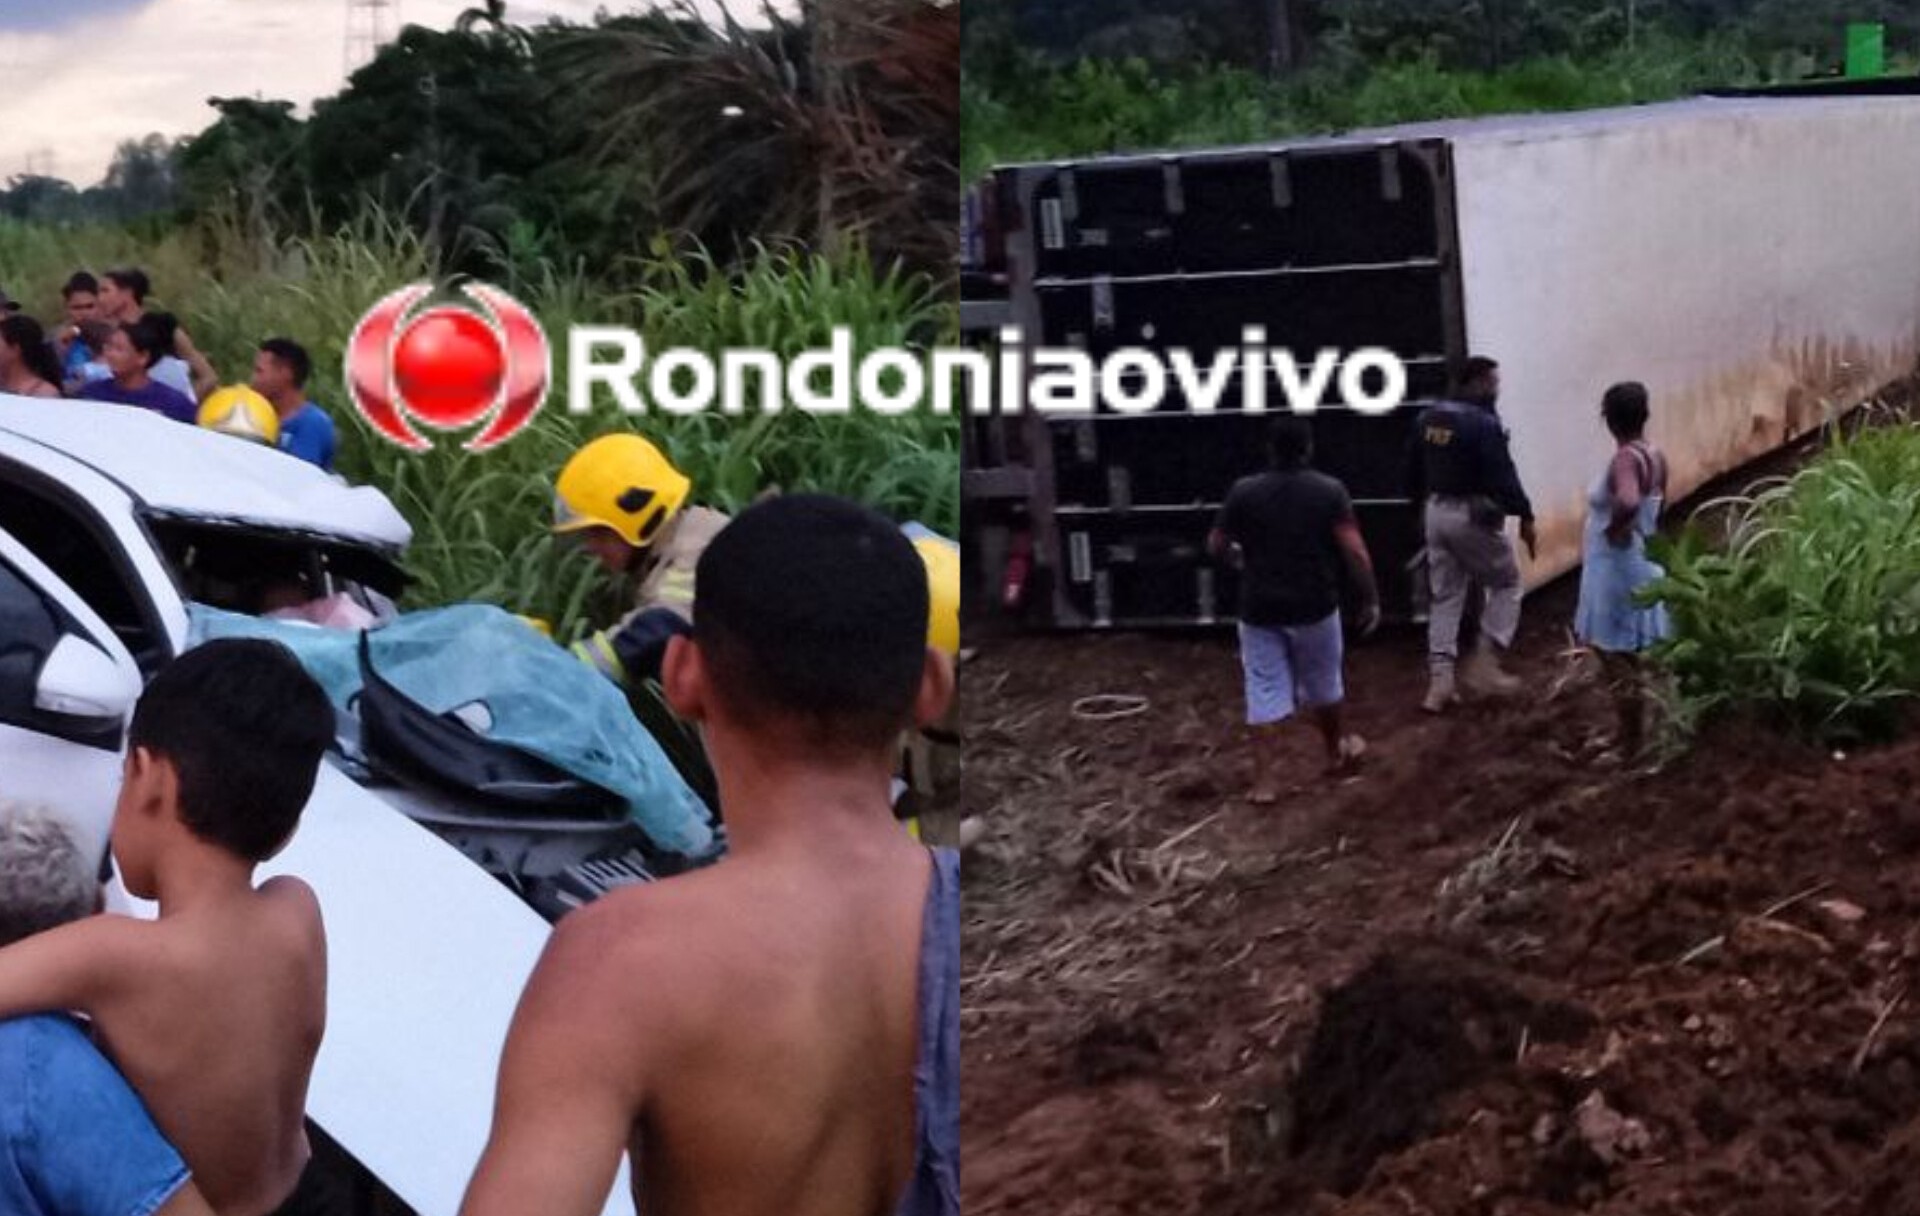 COLISÃO FRONTAL: Motorista fica presa nas ferragens e carreta tomba após grave acidente na BR-364